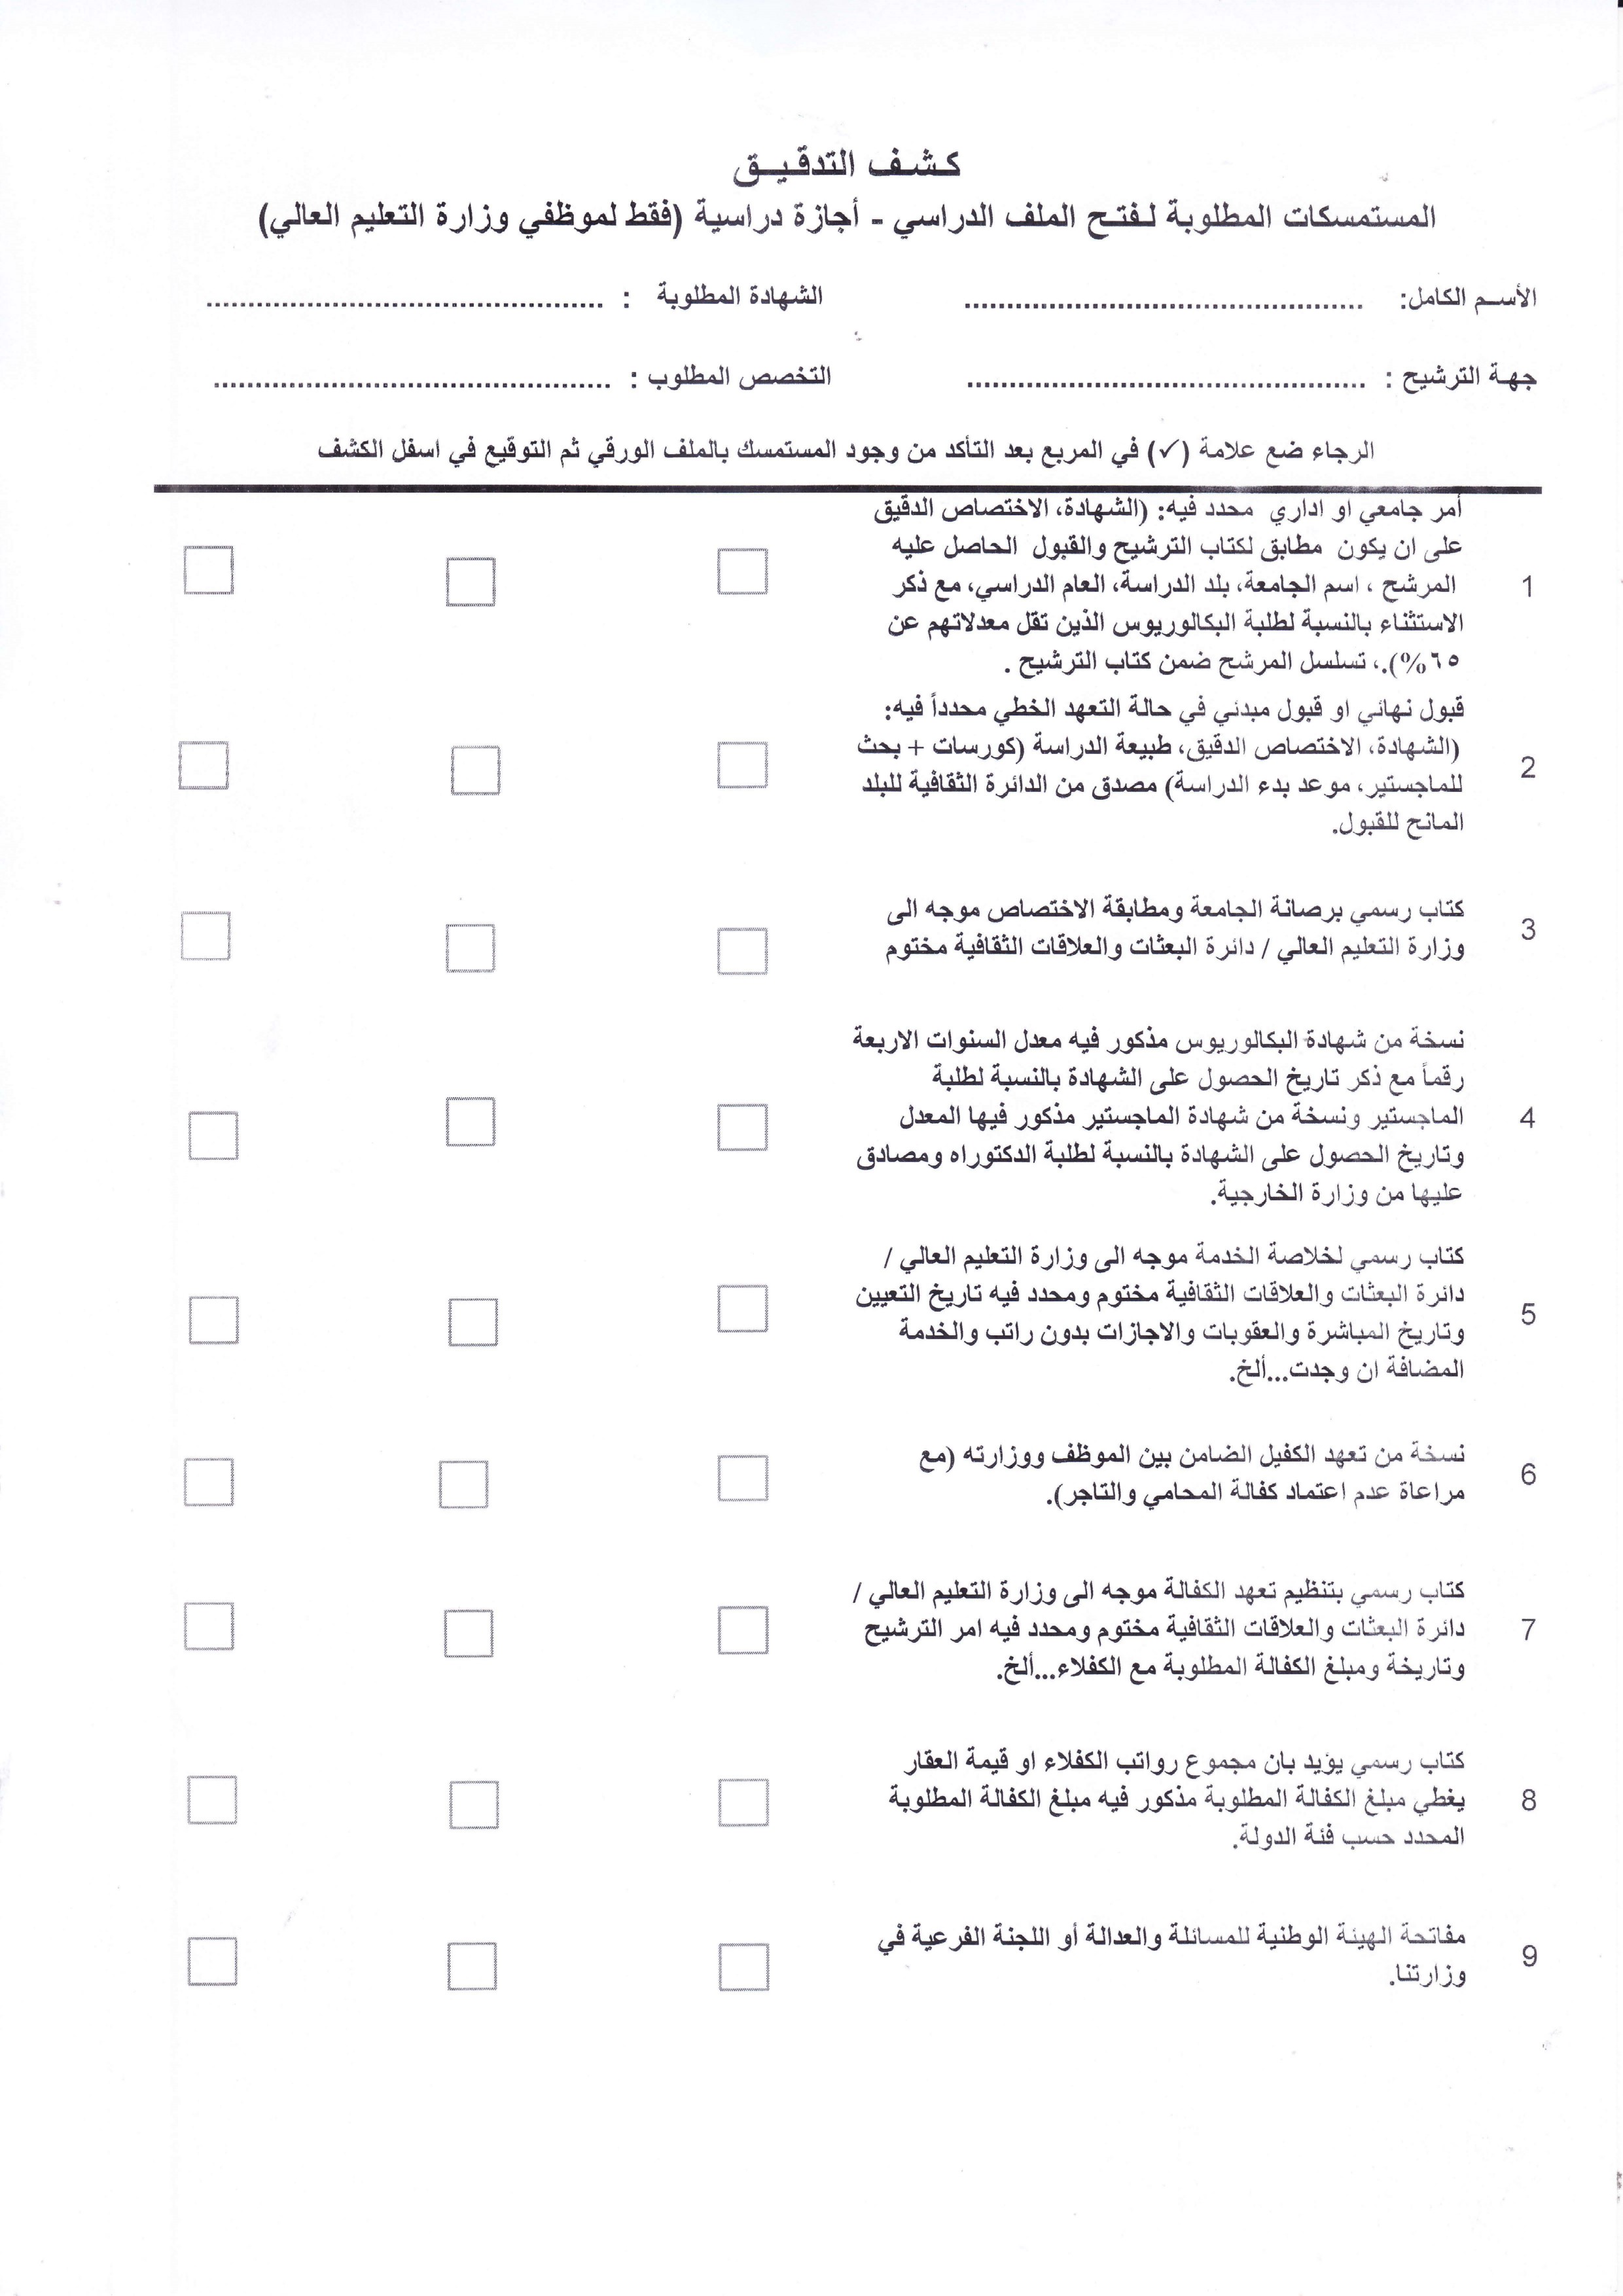 خطة الاجازات الدراسية للعام الدراسي 2014 2015 منتديات درر العراق